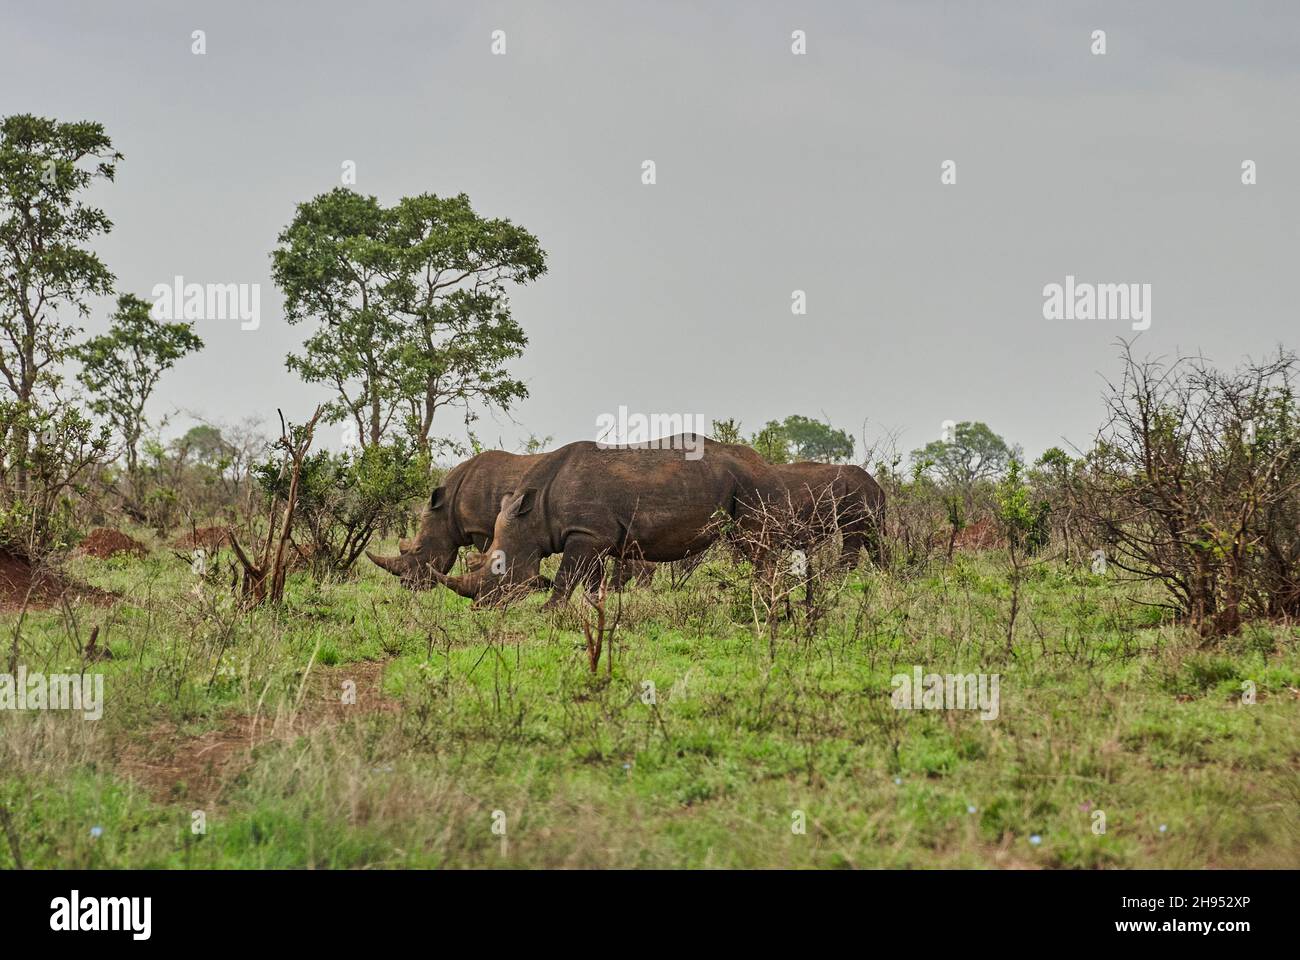 Gruppo di rinoceronti bianchi o rhinoceros quadrati, Ceratotherium simum, pascolo nel denso cespuglio africano Foto Stock